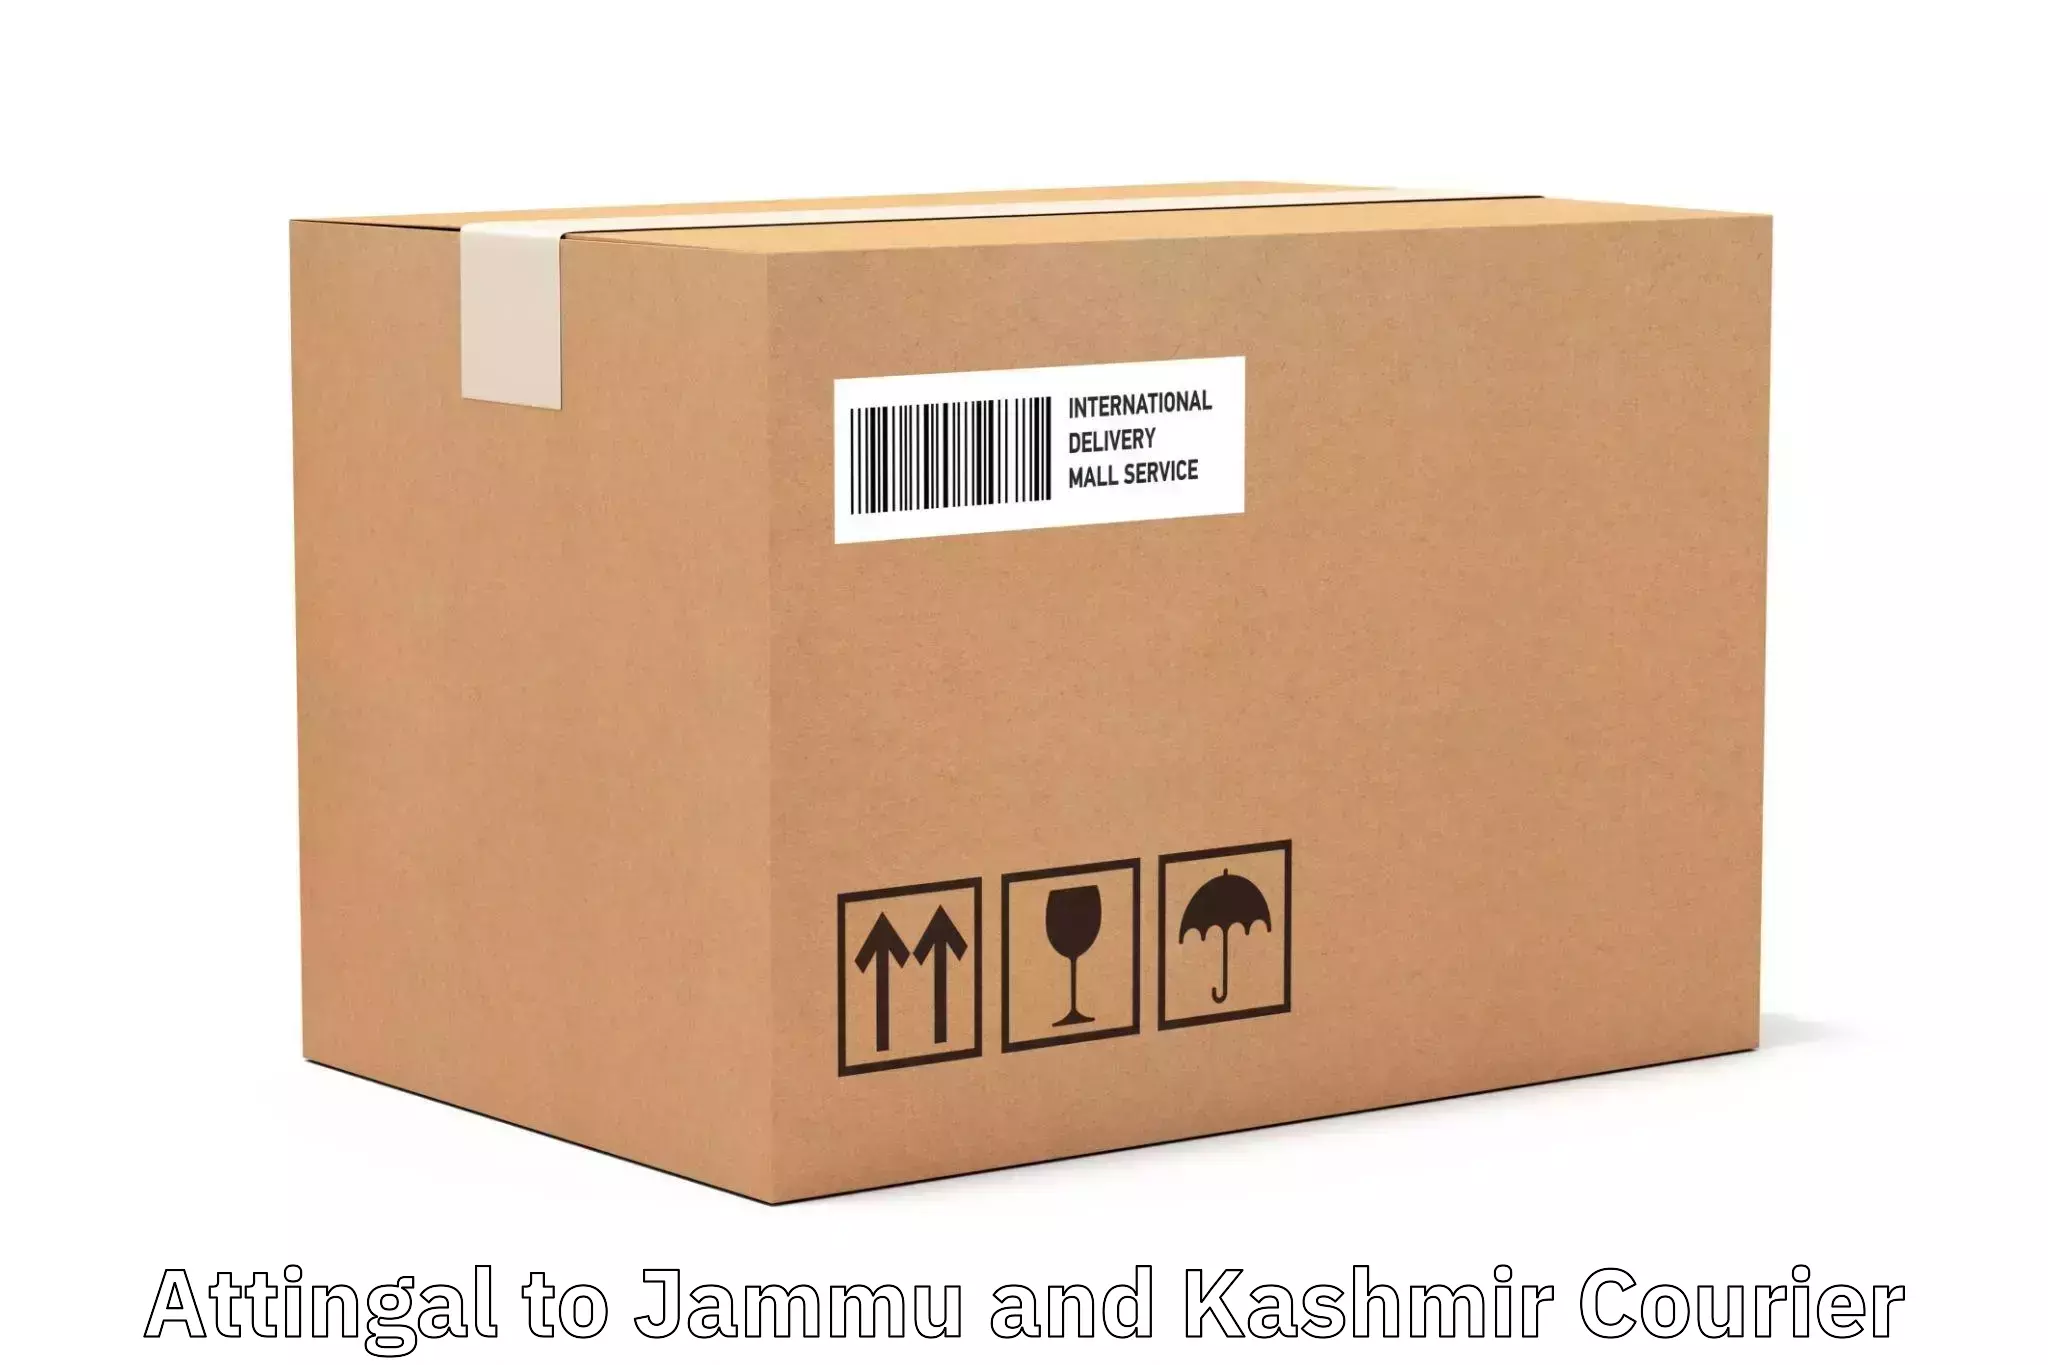 Customer-centric shipping Attingal to Srinagar Kashmir